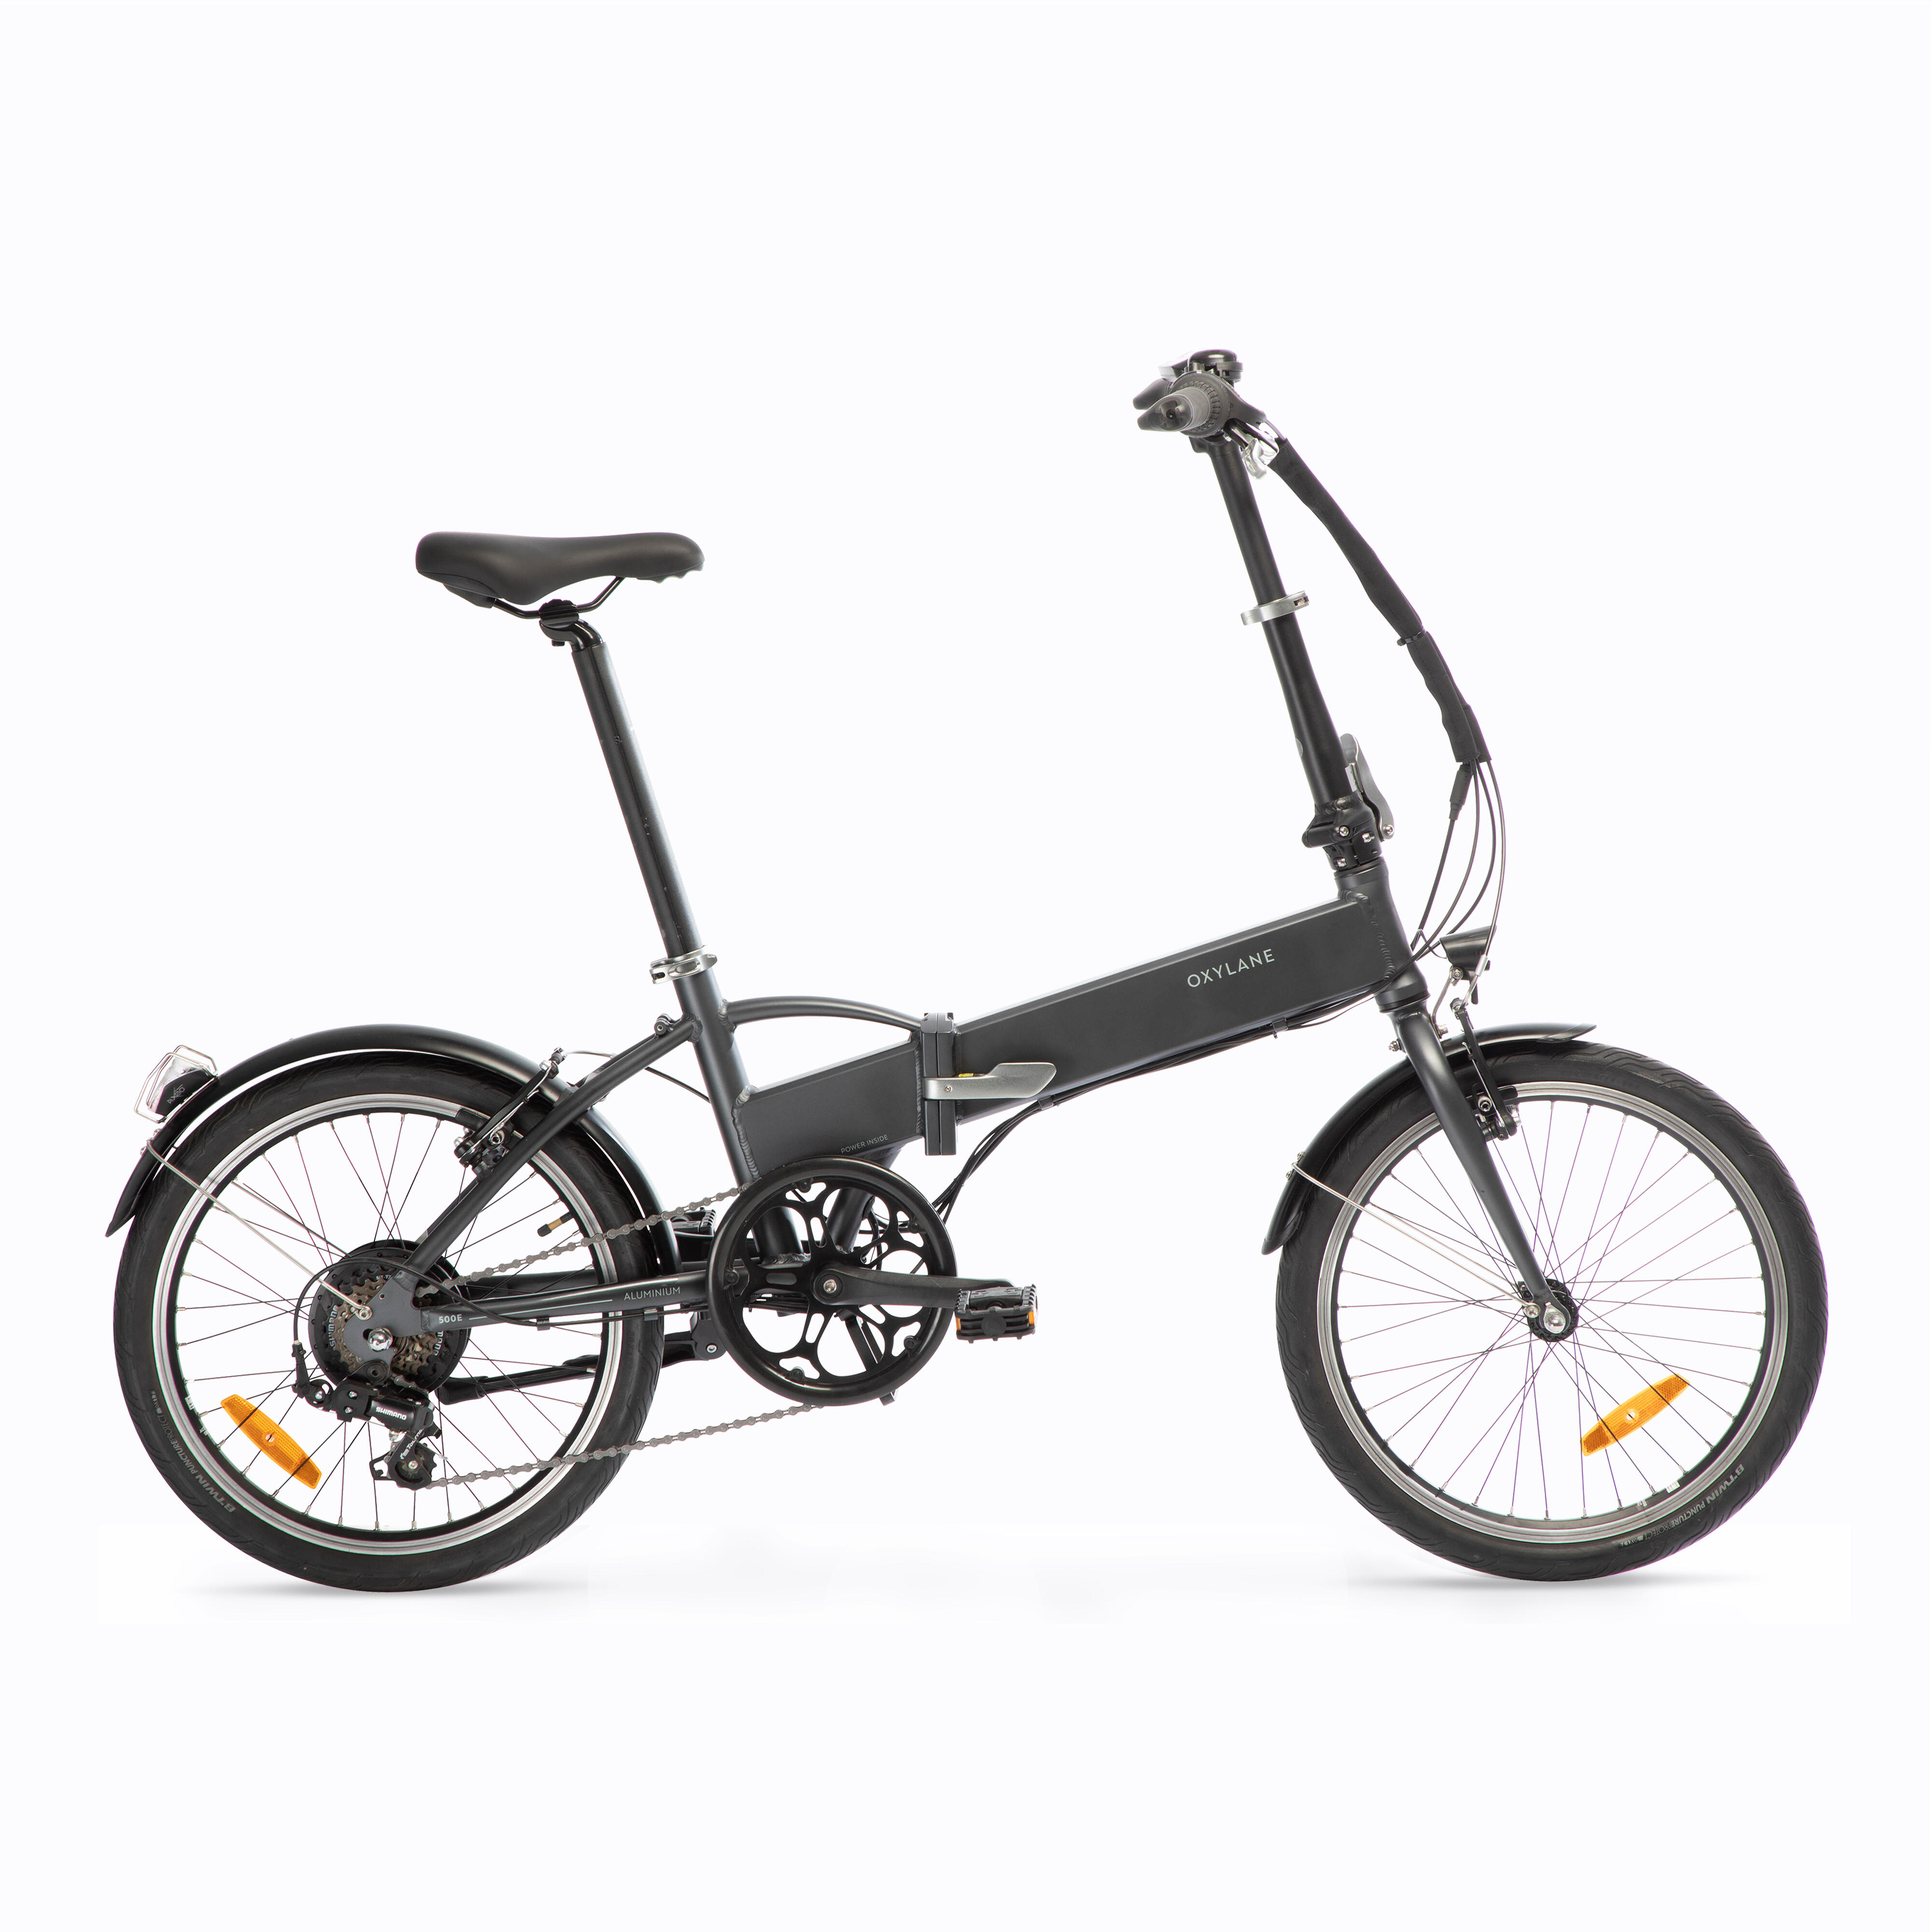 Bicicletă pliabilă cu asistență electrică TILT 500 E Gri-Negru BTWIN BTWIN